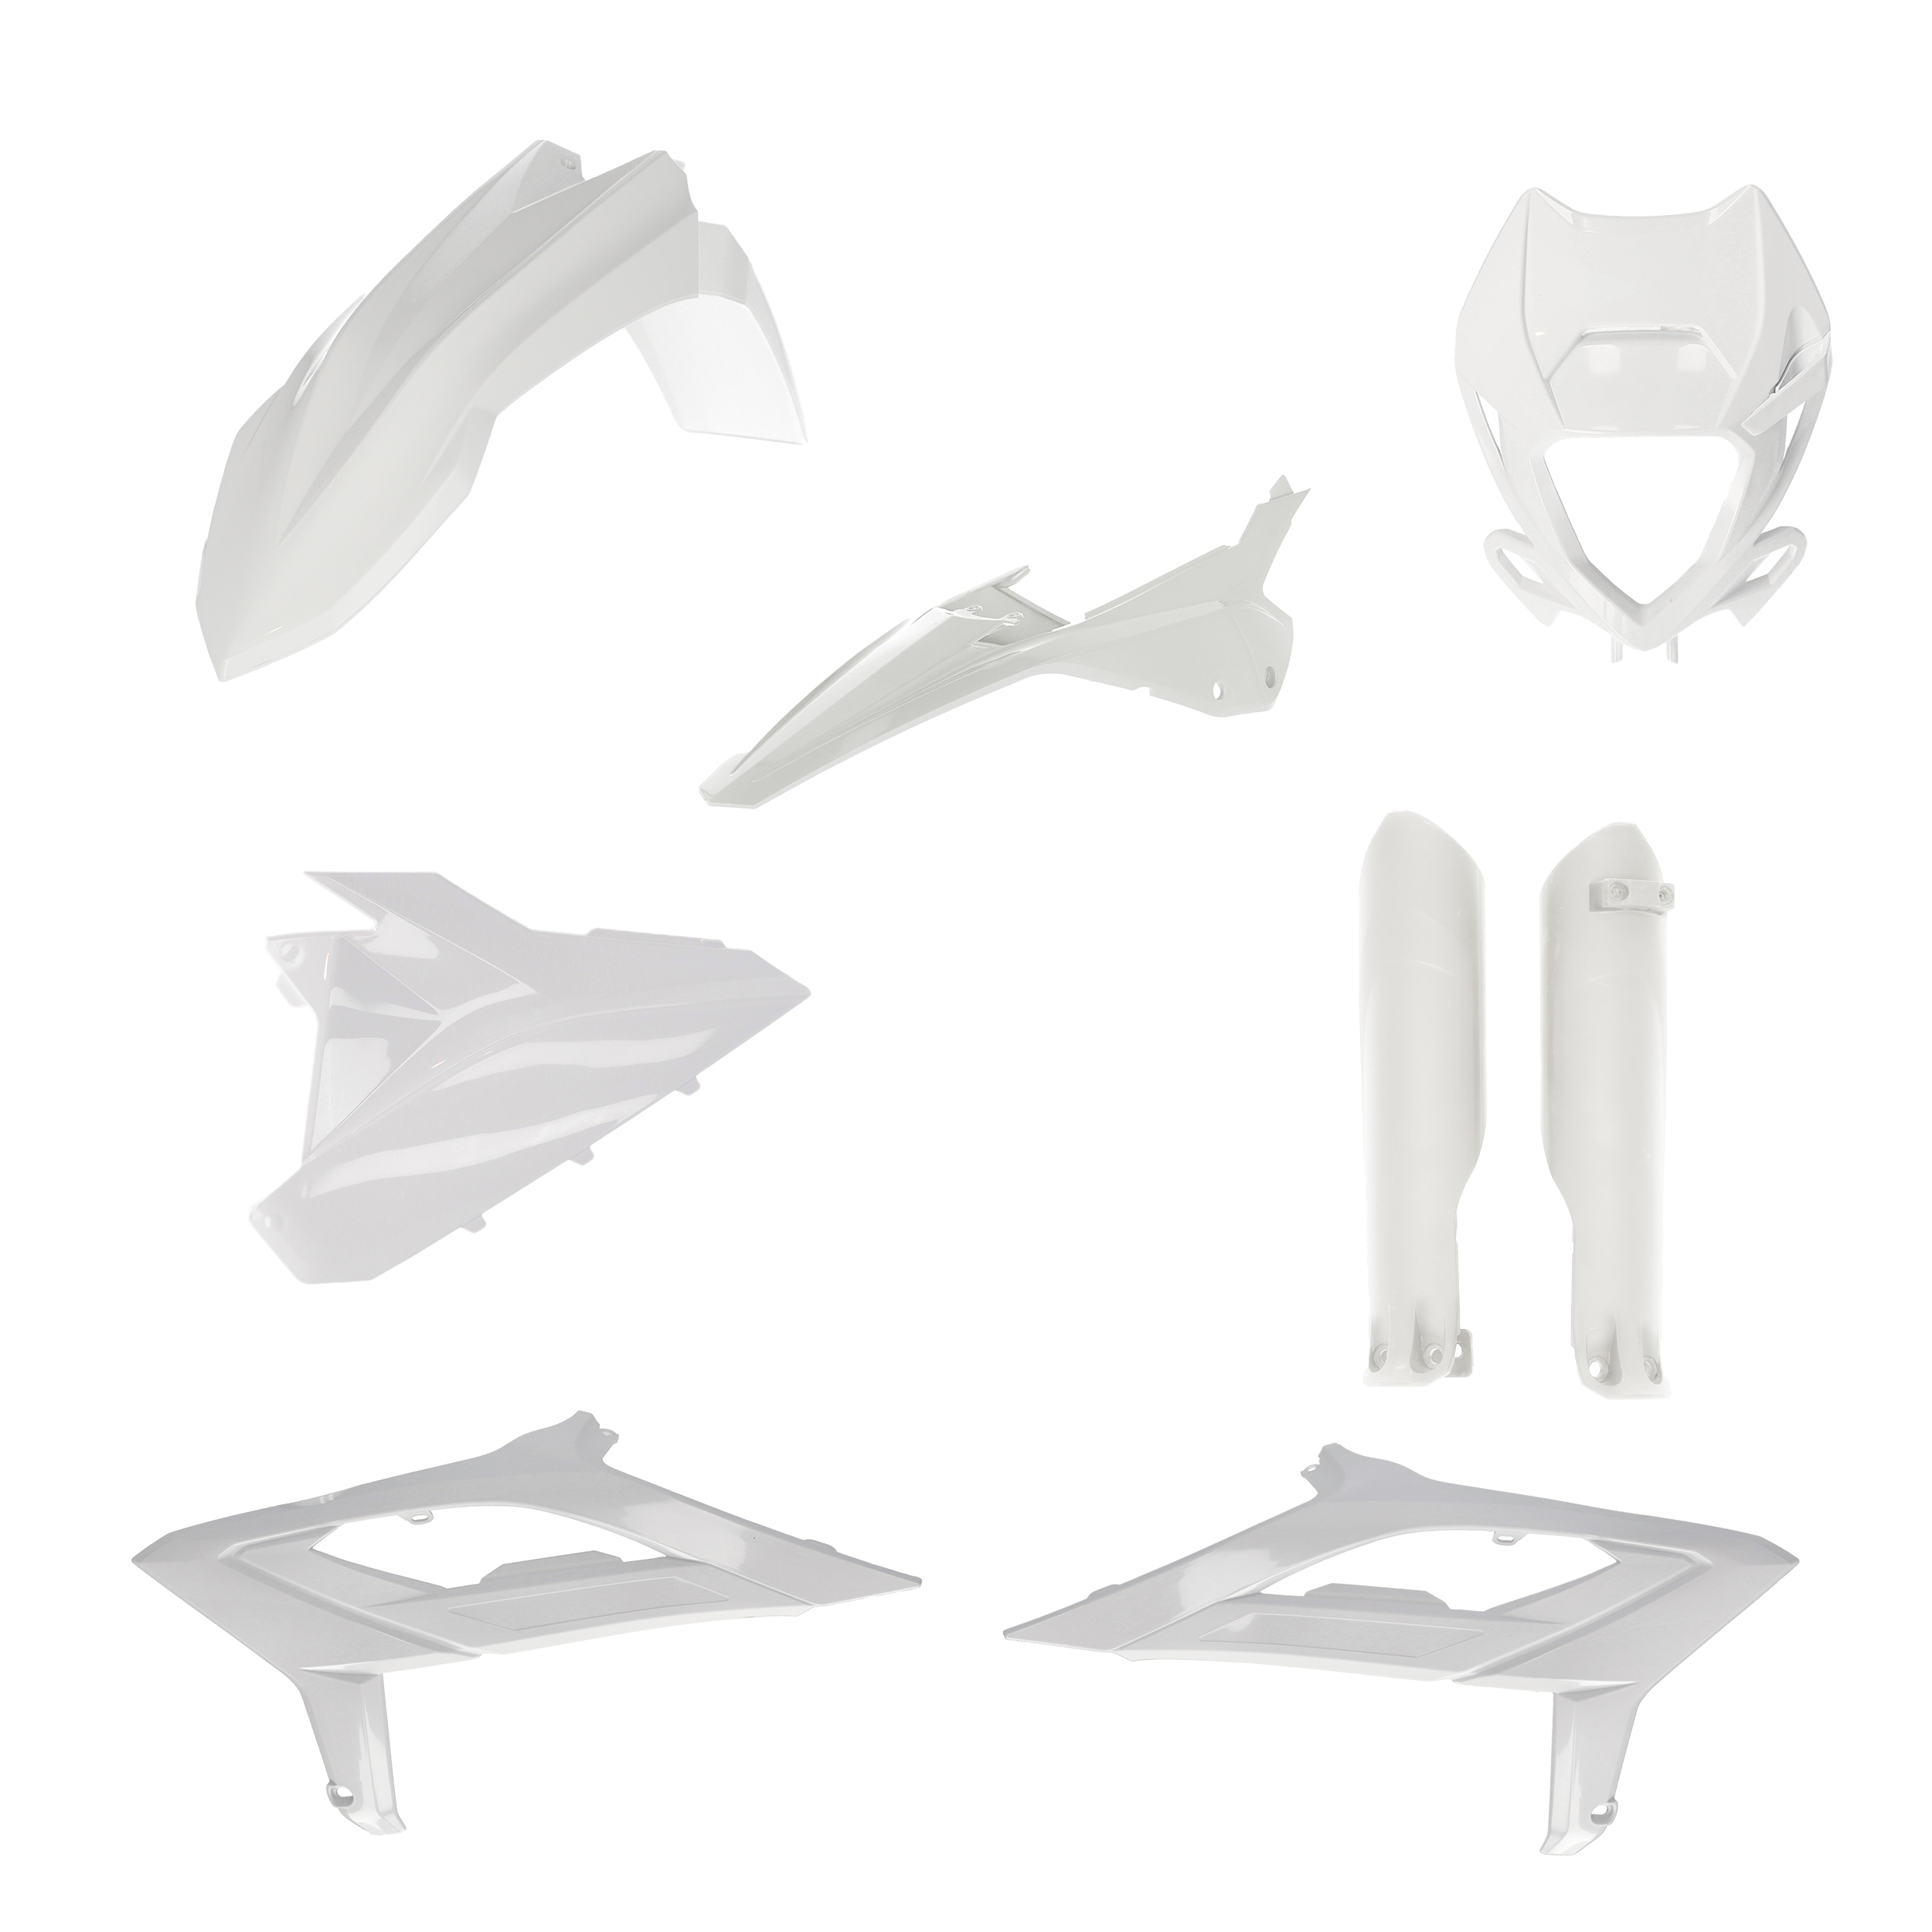 Plastikteile für deine Beta RR 125-480 in weiß bestehend aus Kotflügel vorn Kotflügel hinten Kühlerspoiler Gabelschützer Air Box Cover Lampenmaske